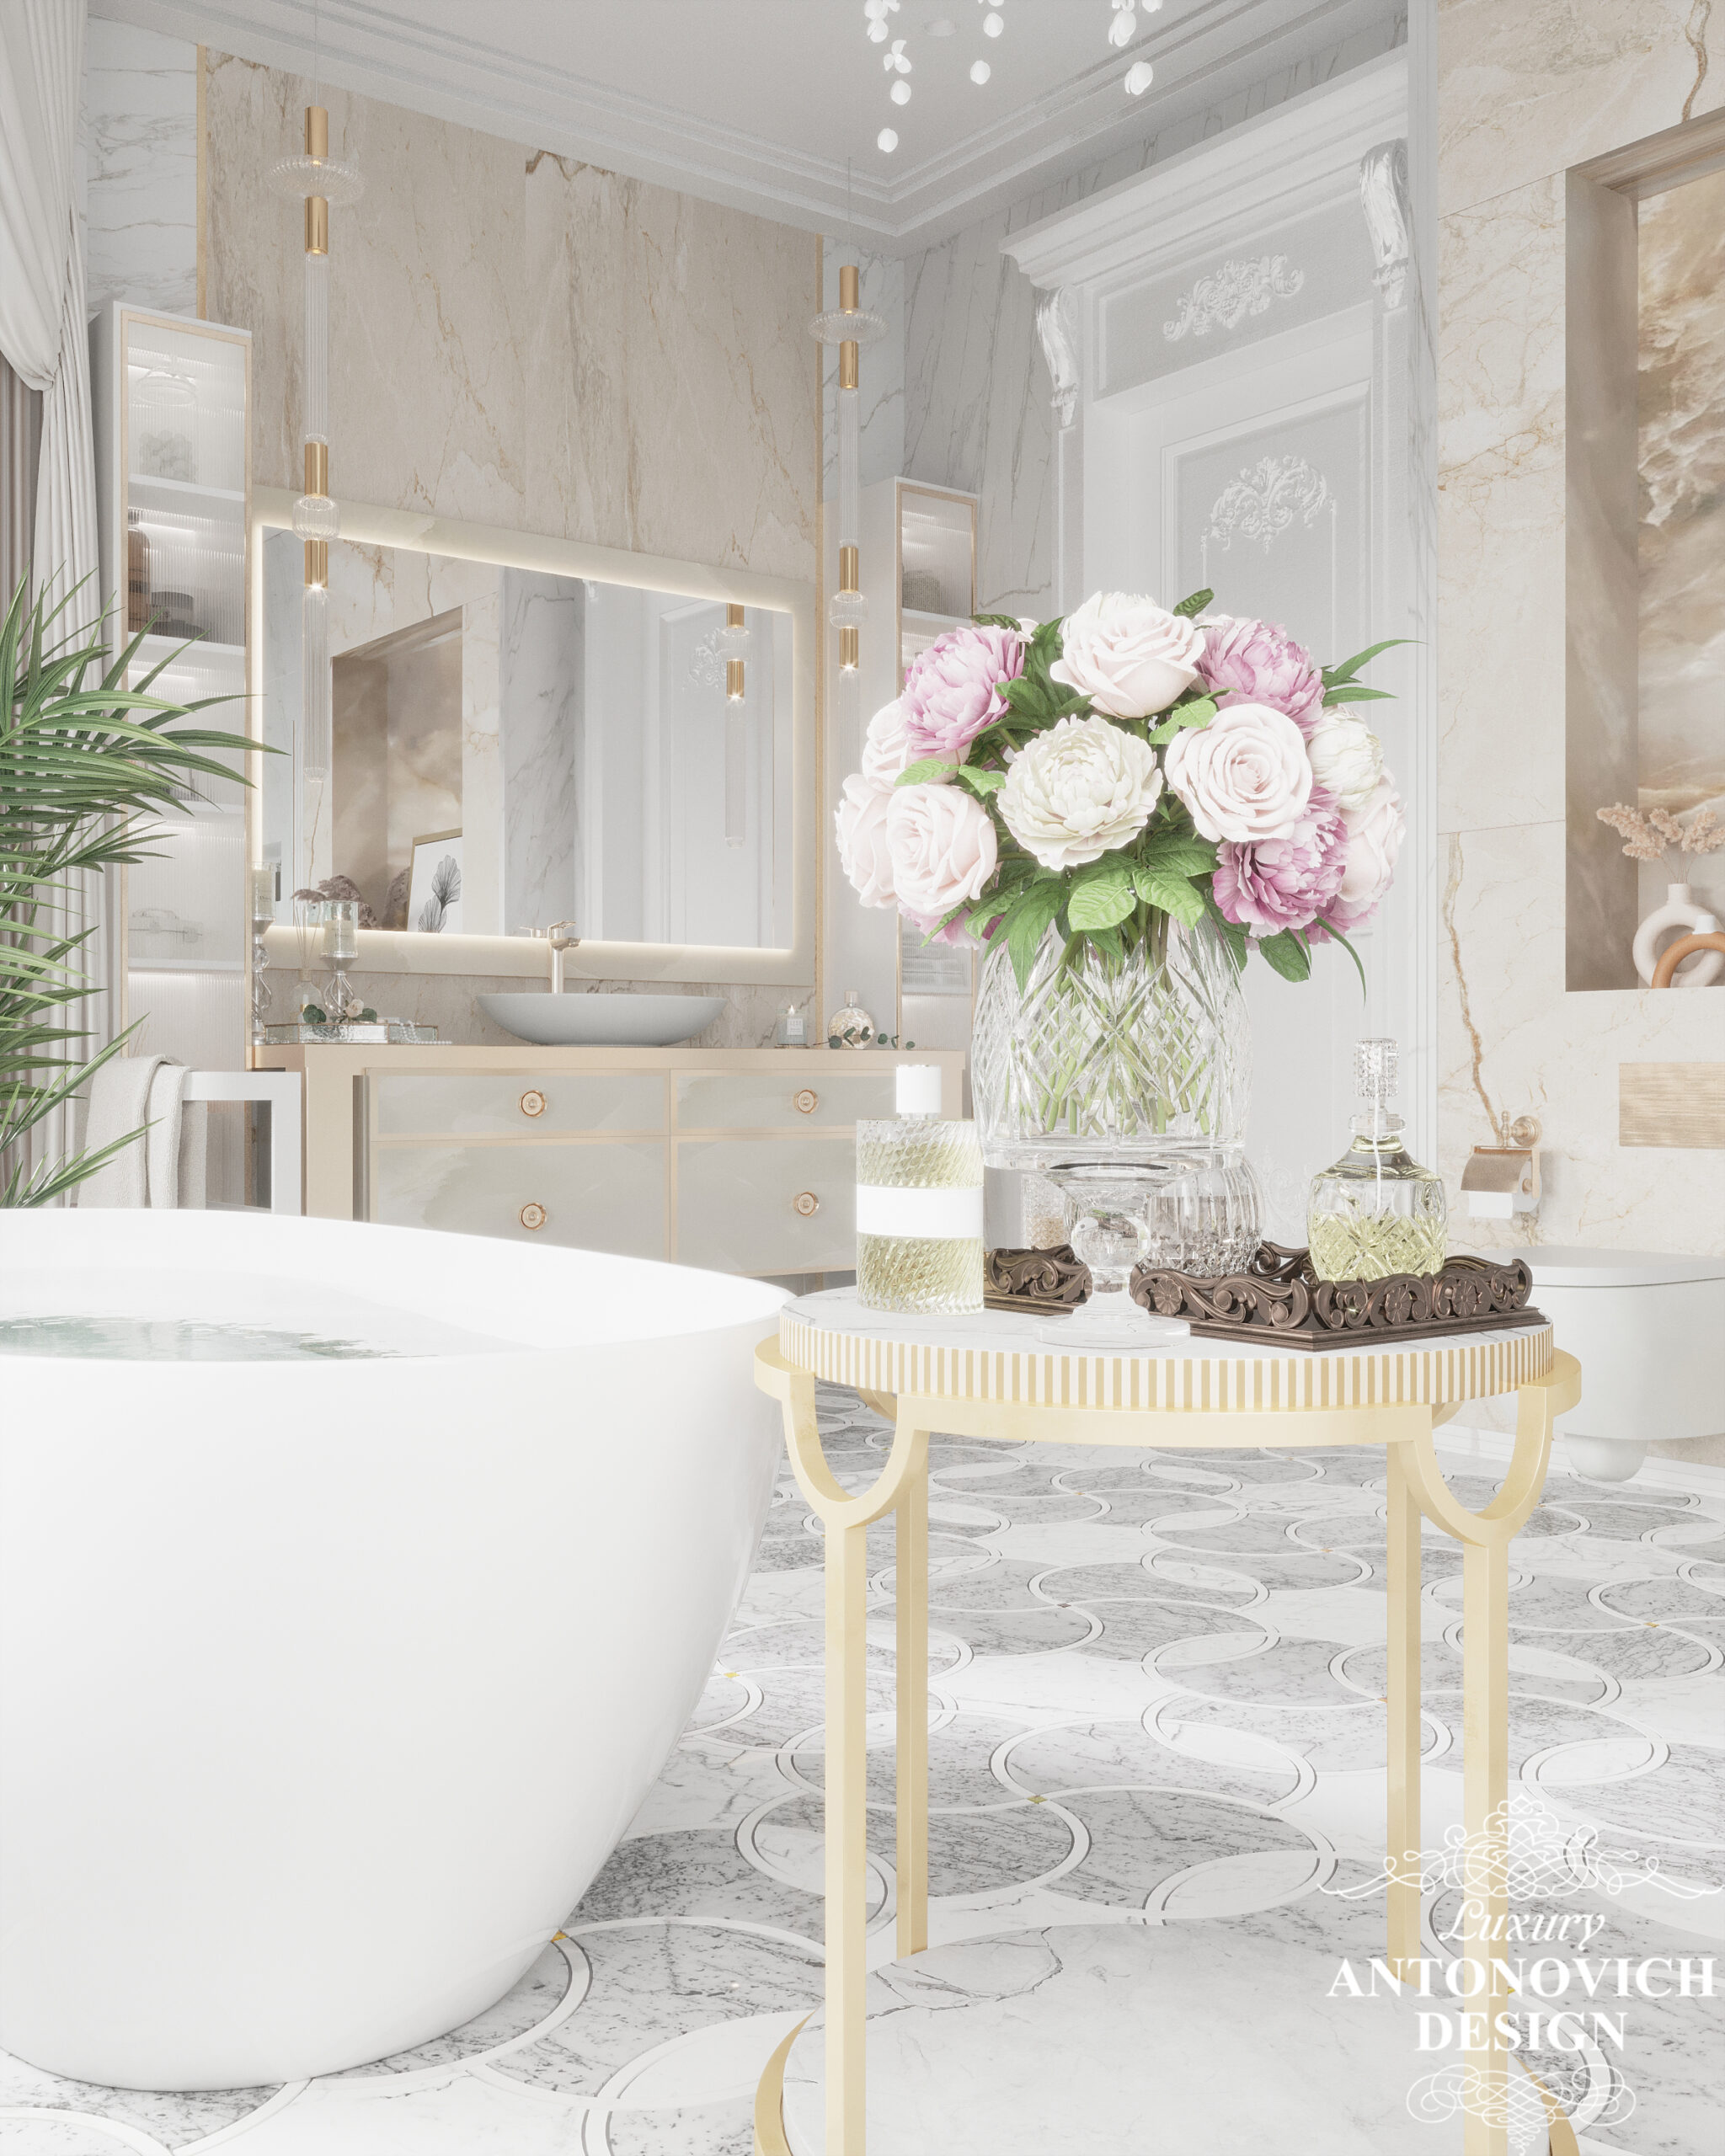 Декор в ванной комнате, новые коллекции мебели итальянских дизайнеров в проекте ванной комнаты, санузла. Лучшие дизайны ванных комнат, роскошный дизайн.